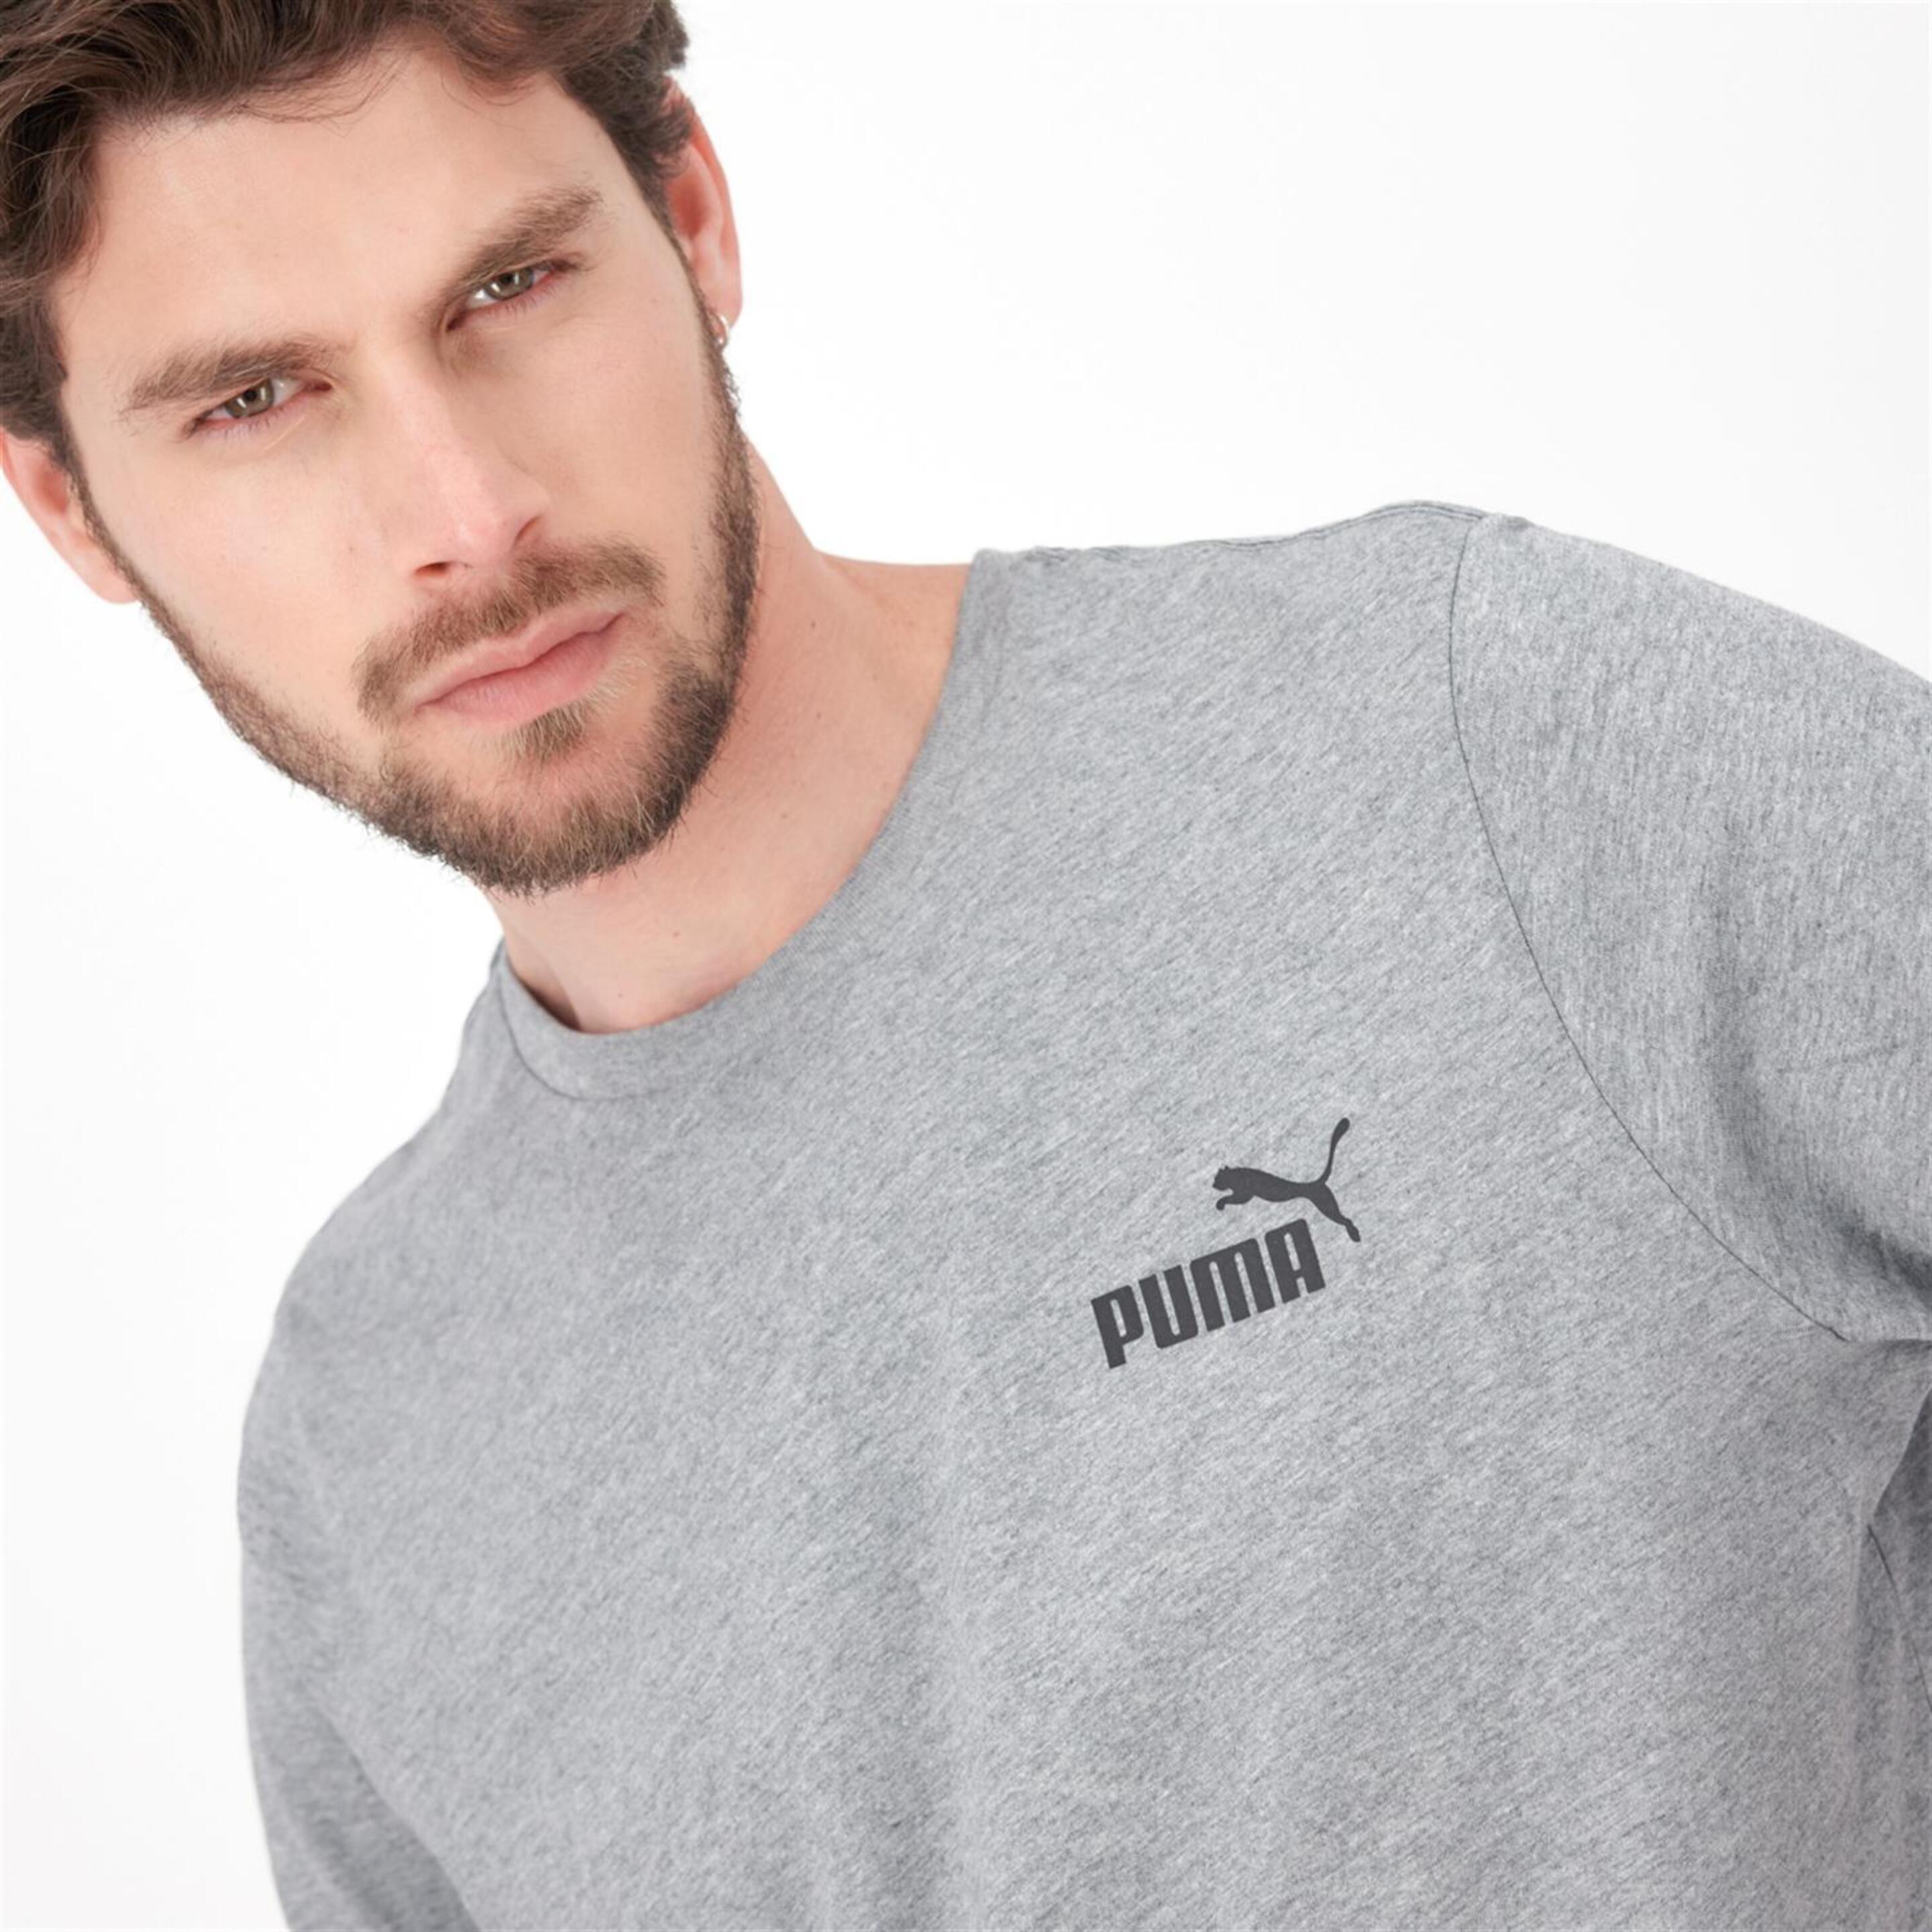 Puma Small Logo - Gris - Camiseta Hombre